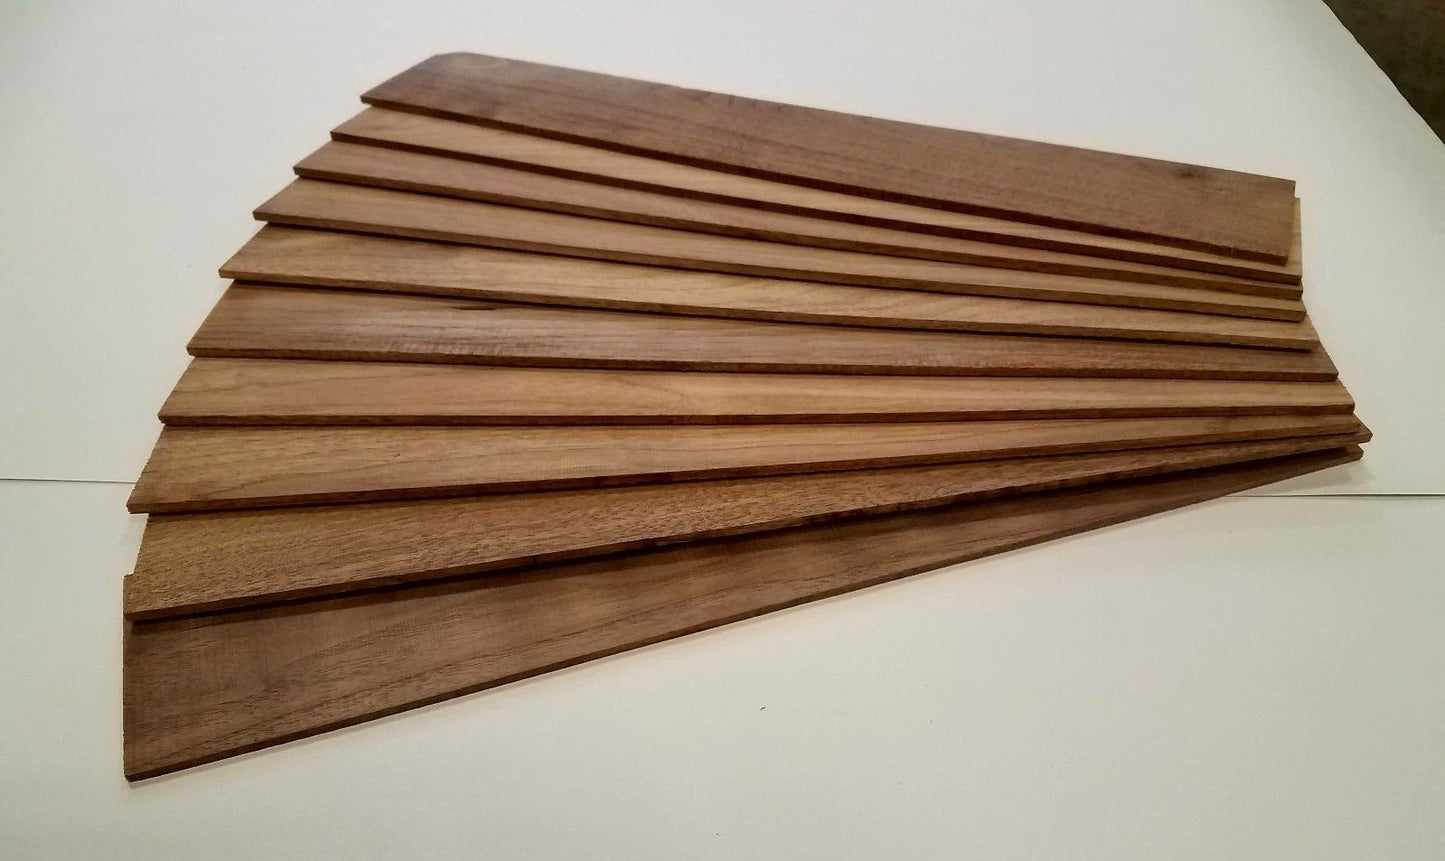 Black Walnut Thin Sawed Lumber  - 1/8" x 3" x 18"